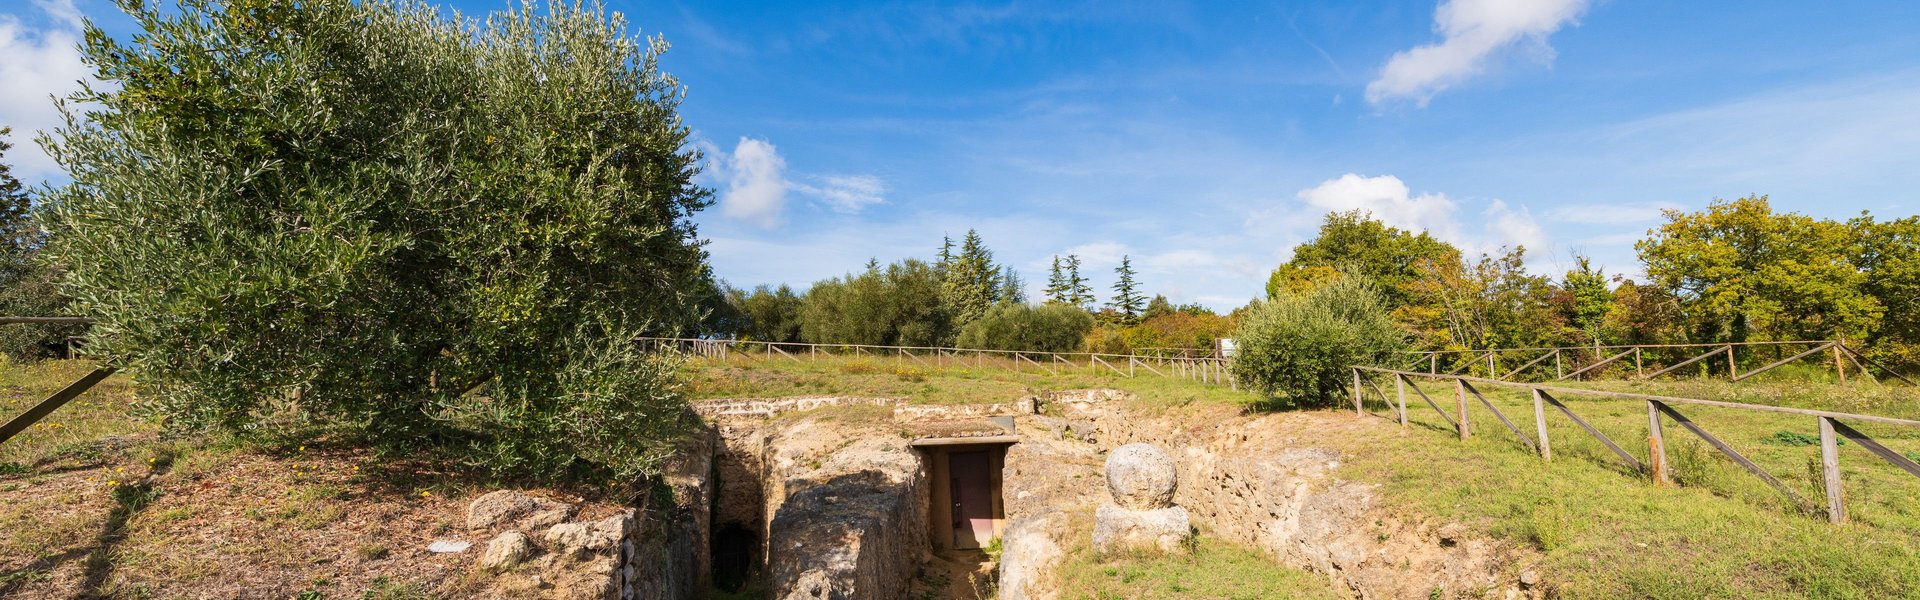 Necropoli di Sarteano. Tomba